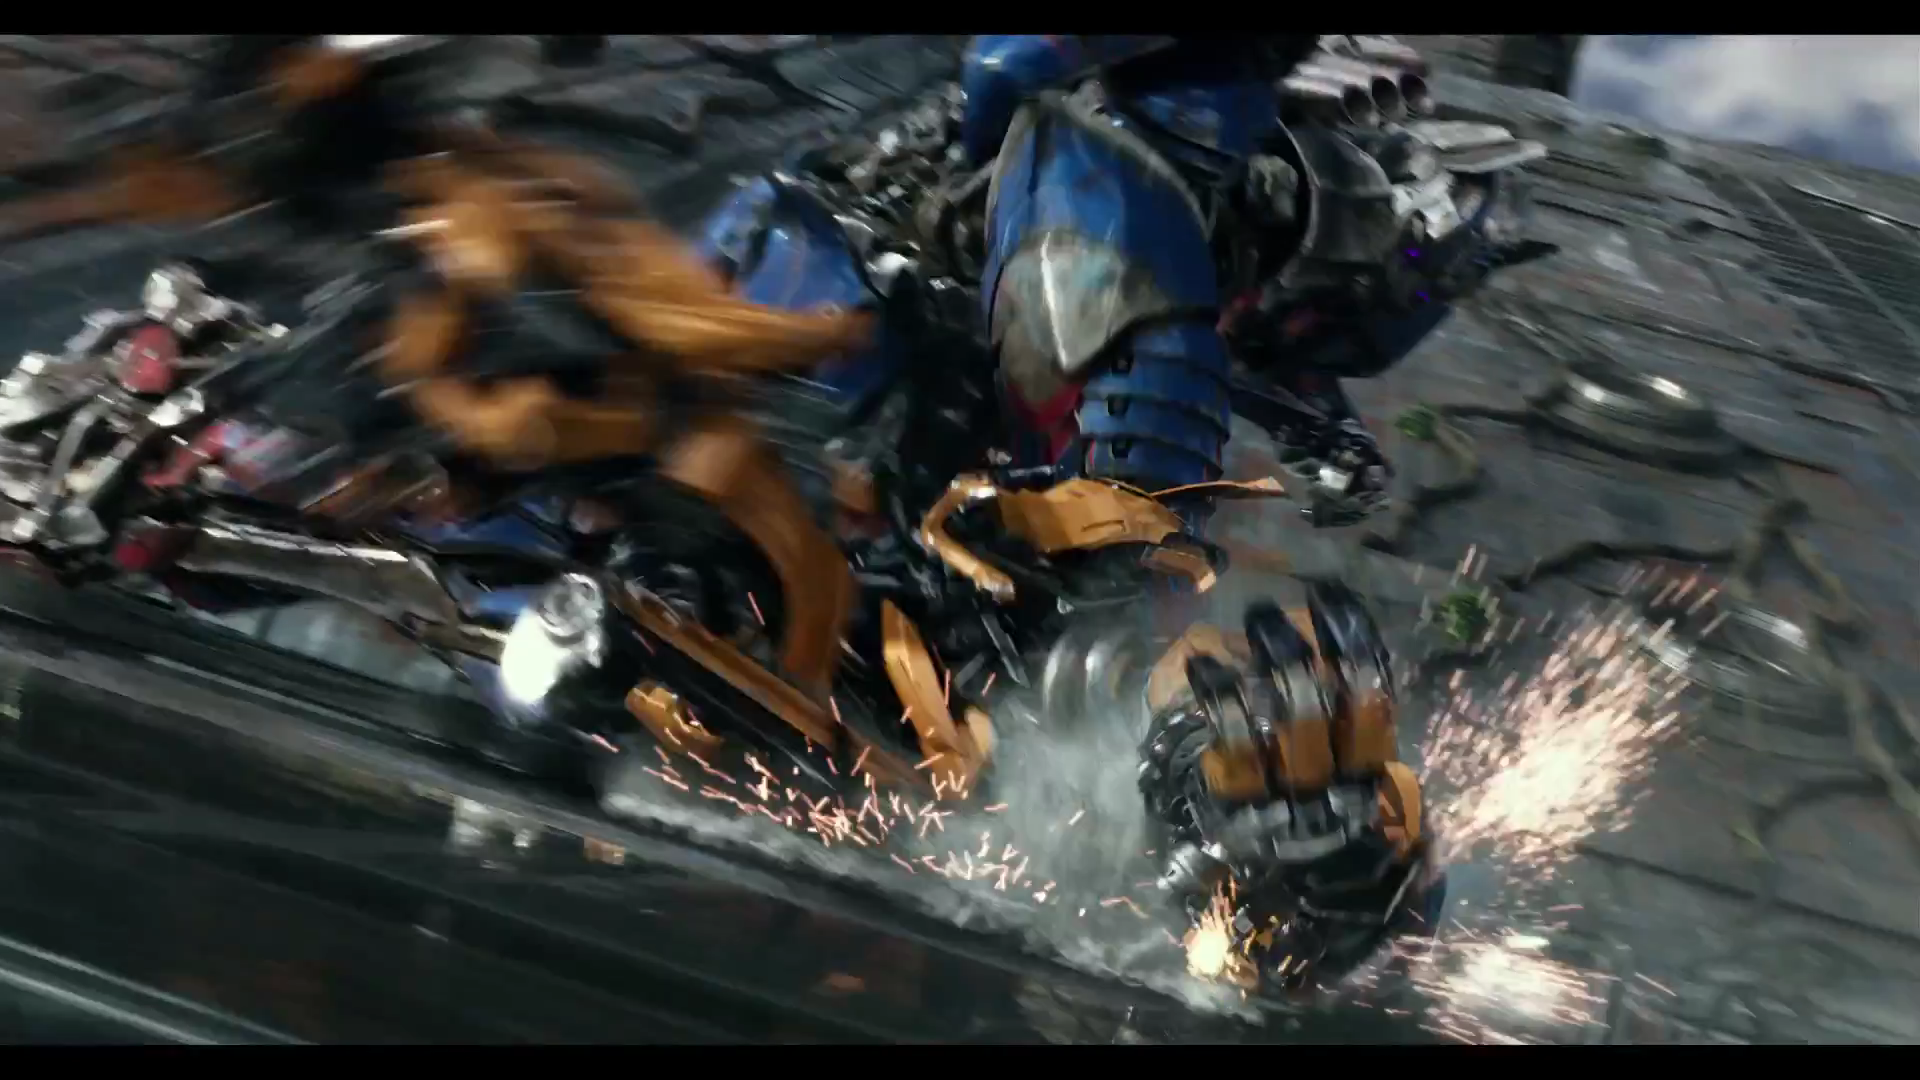 6 điểm dễ nhận thấy trong trailer mới của phim Transformers The Last Knight 5